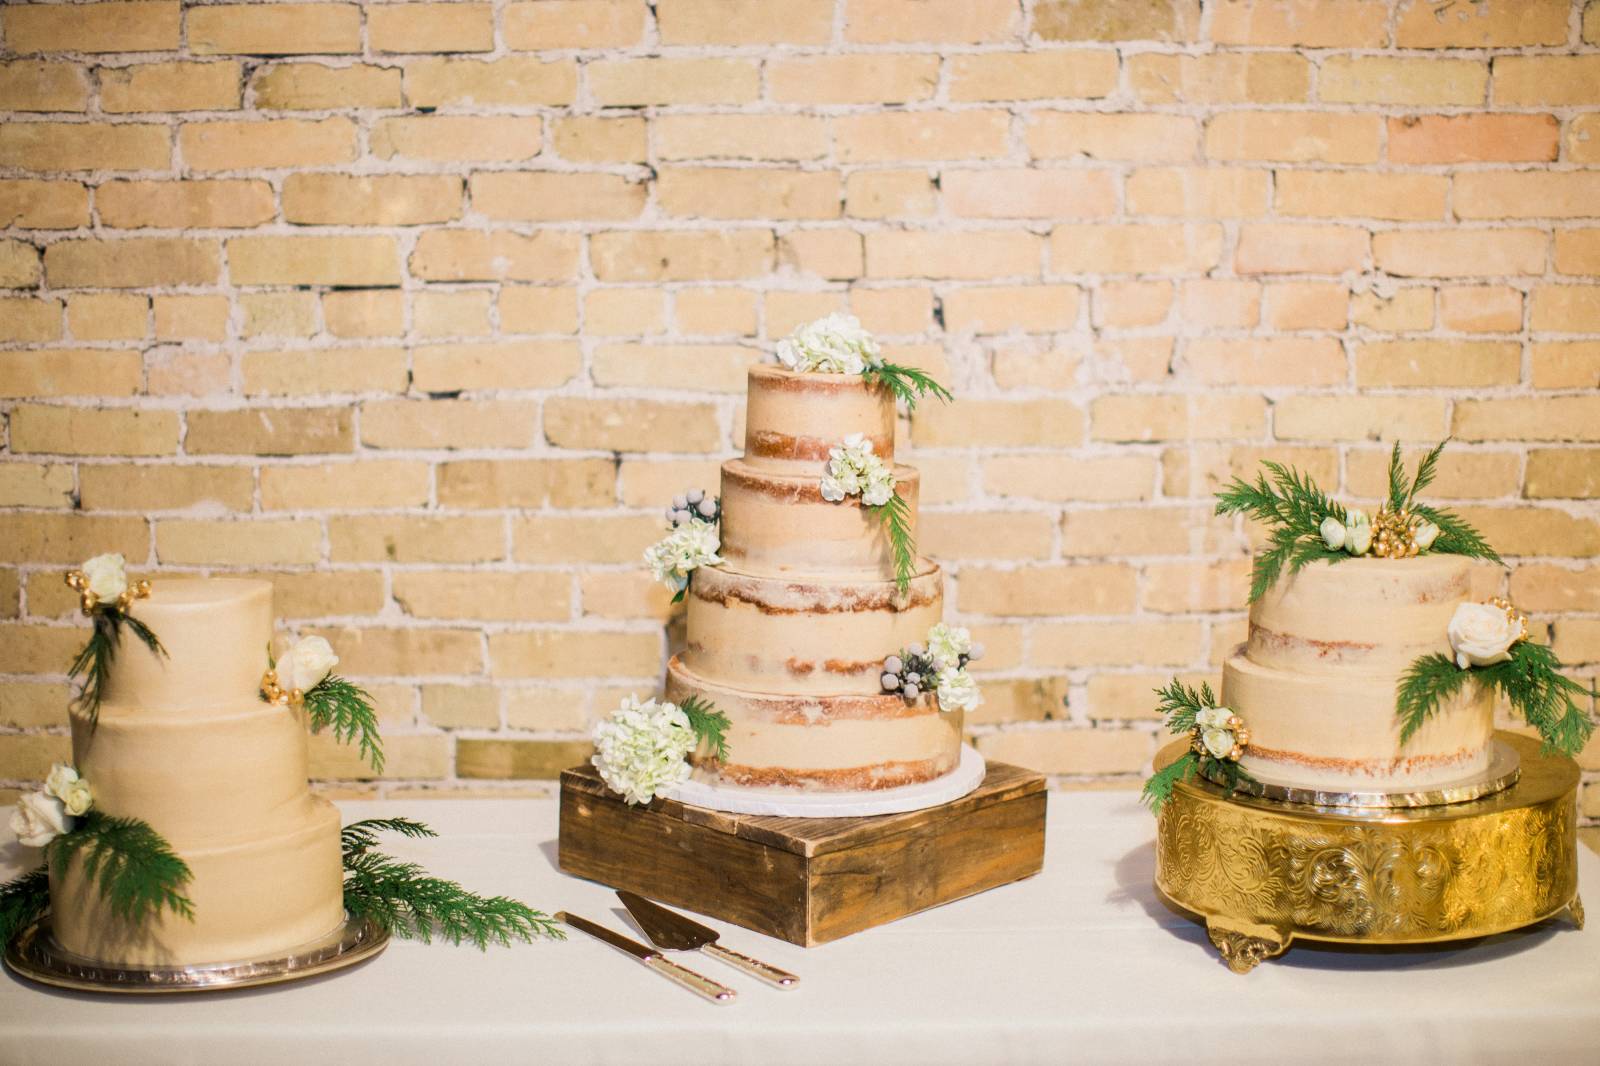 naked cake, winter wedding cake, minimalist wedding cake